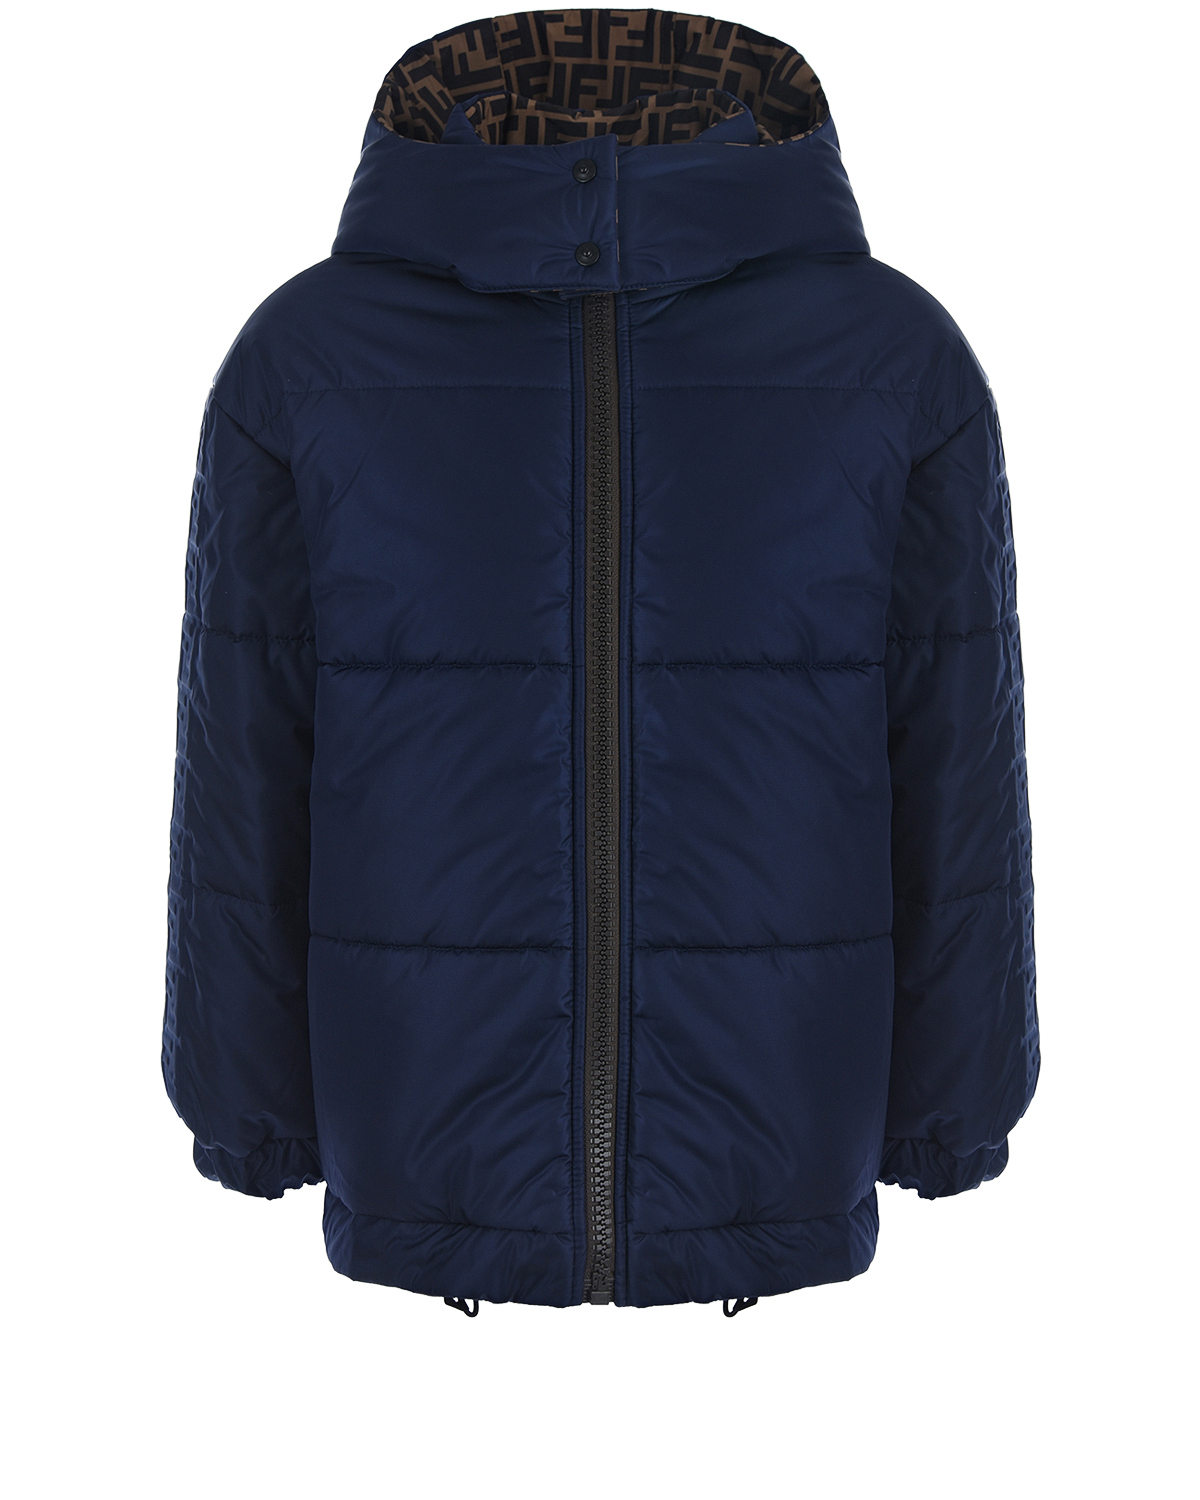 Двухсторонняя стеганая куртка Fendi детская, размер 128, цвет синий - фото 1